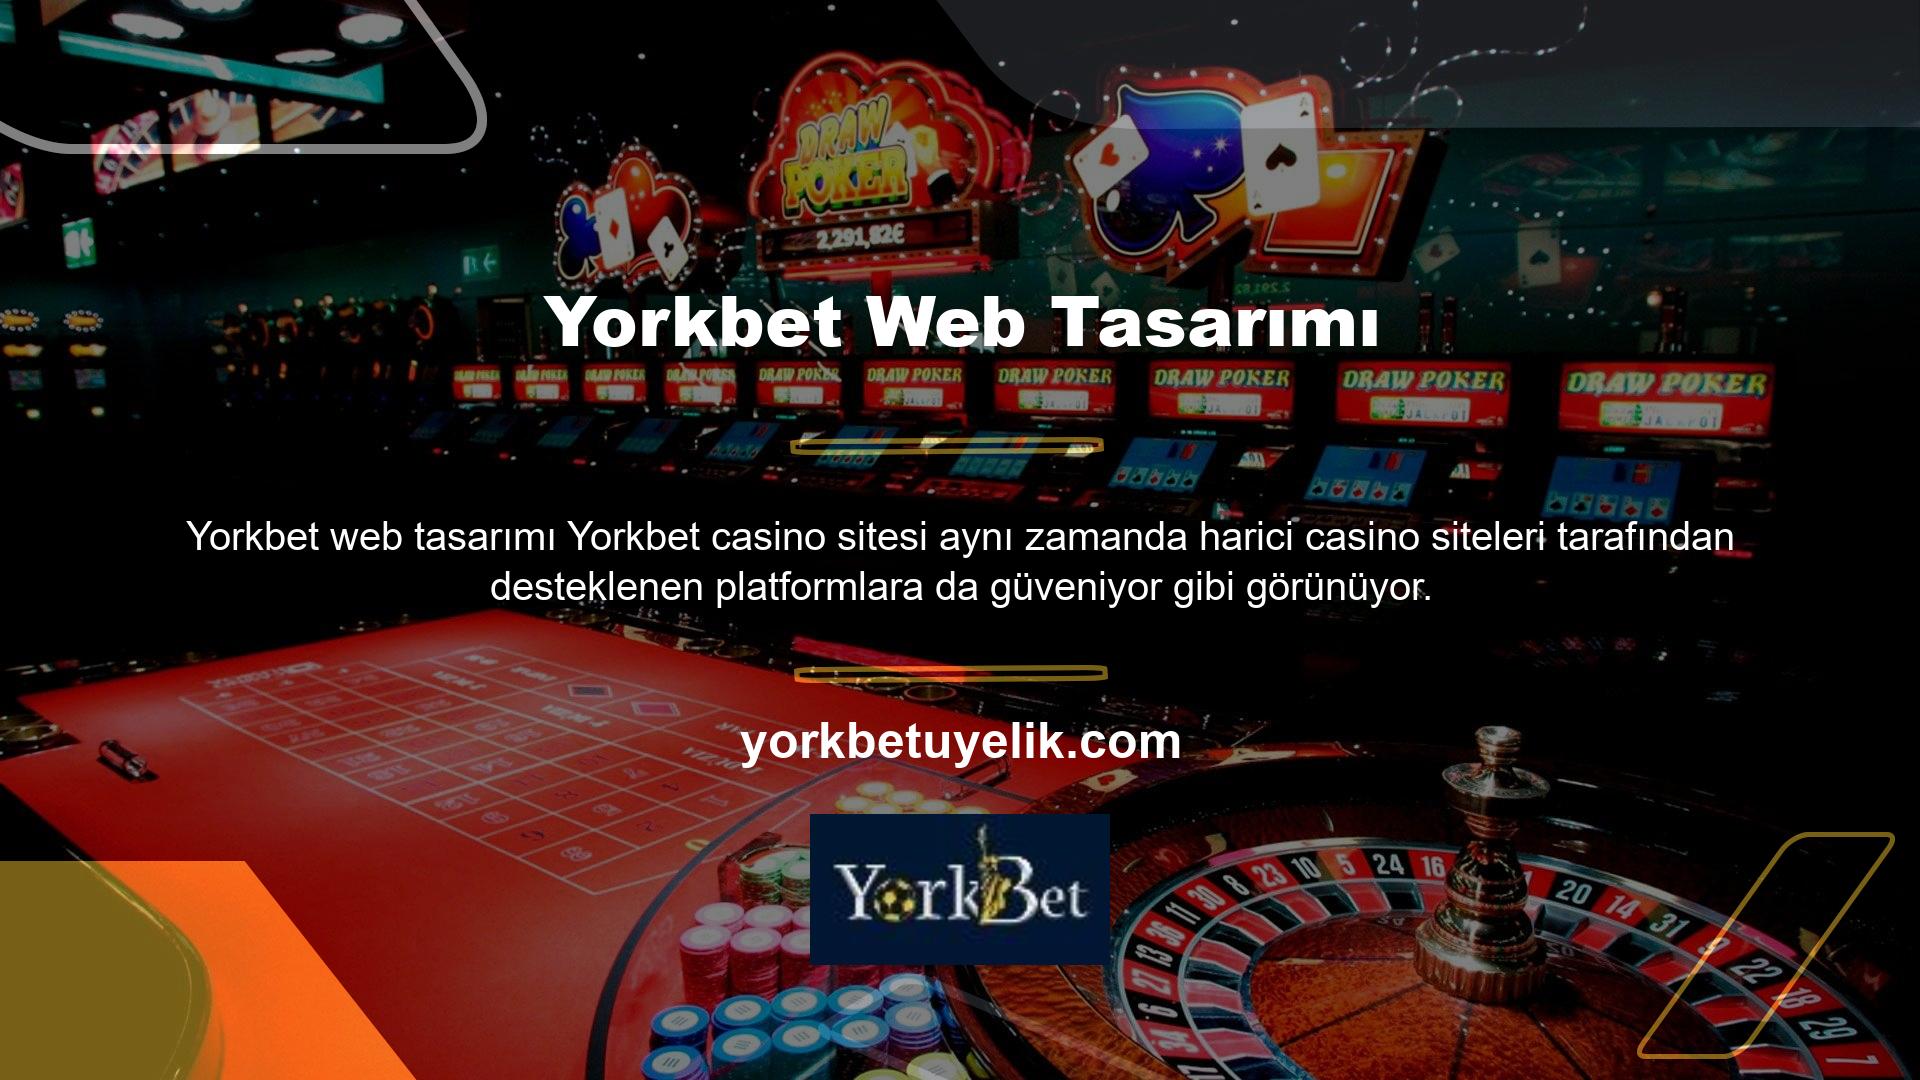 Bu casino web sitesinin tasarımına bakarsanız, web sitesinin ilk tasarımının üç renkli siyah bir ana ekran olduğunu fark edeceksiniz: sarı, beyaz ve gri